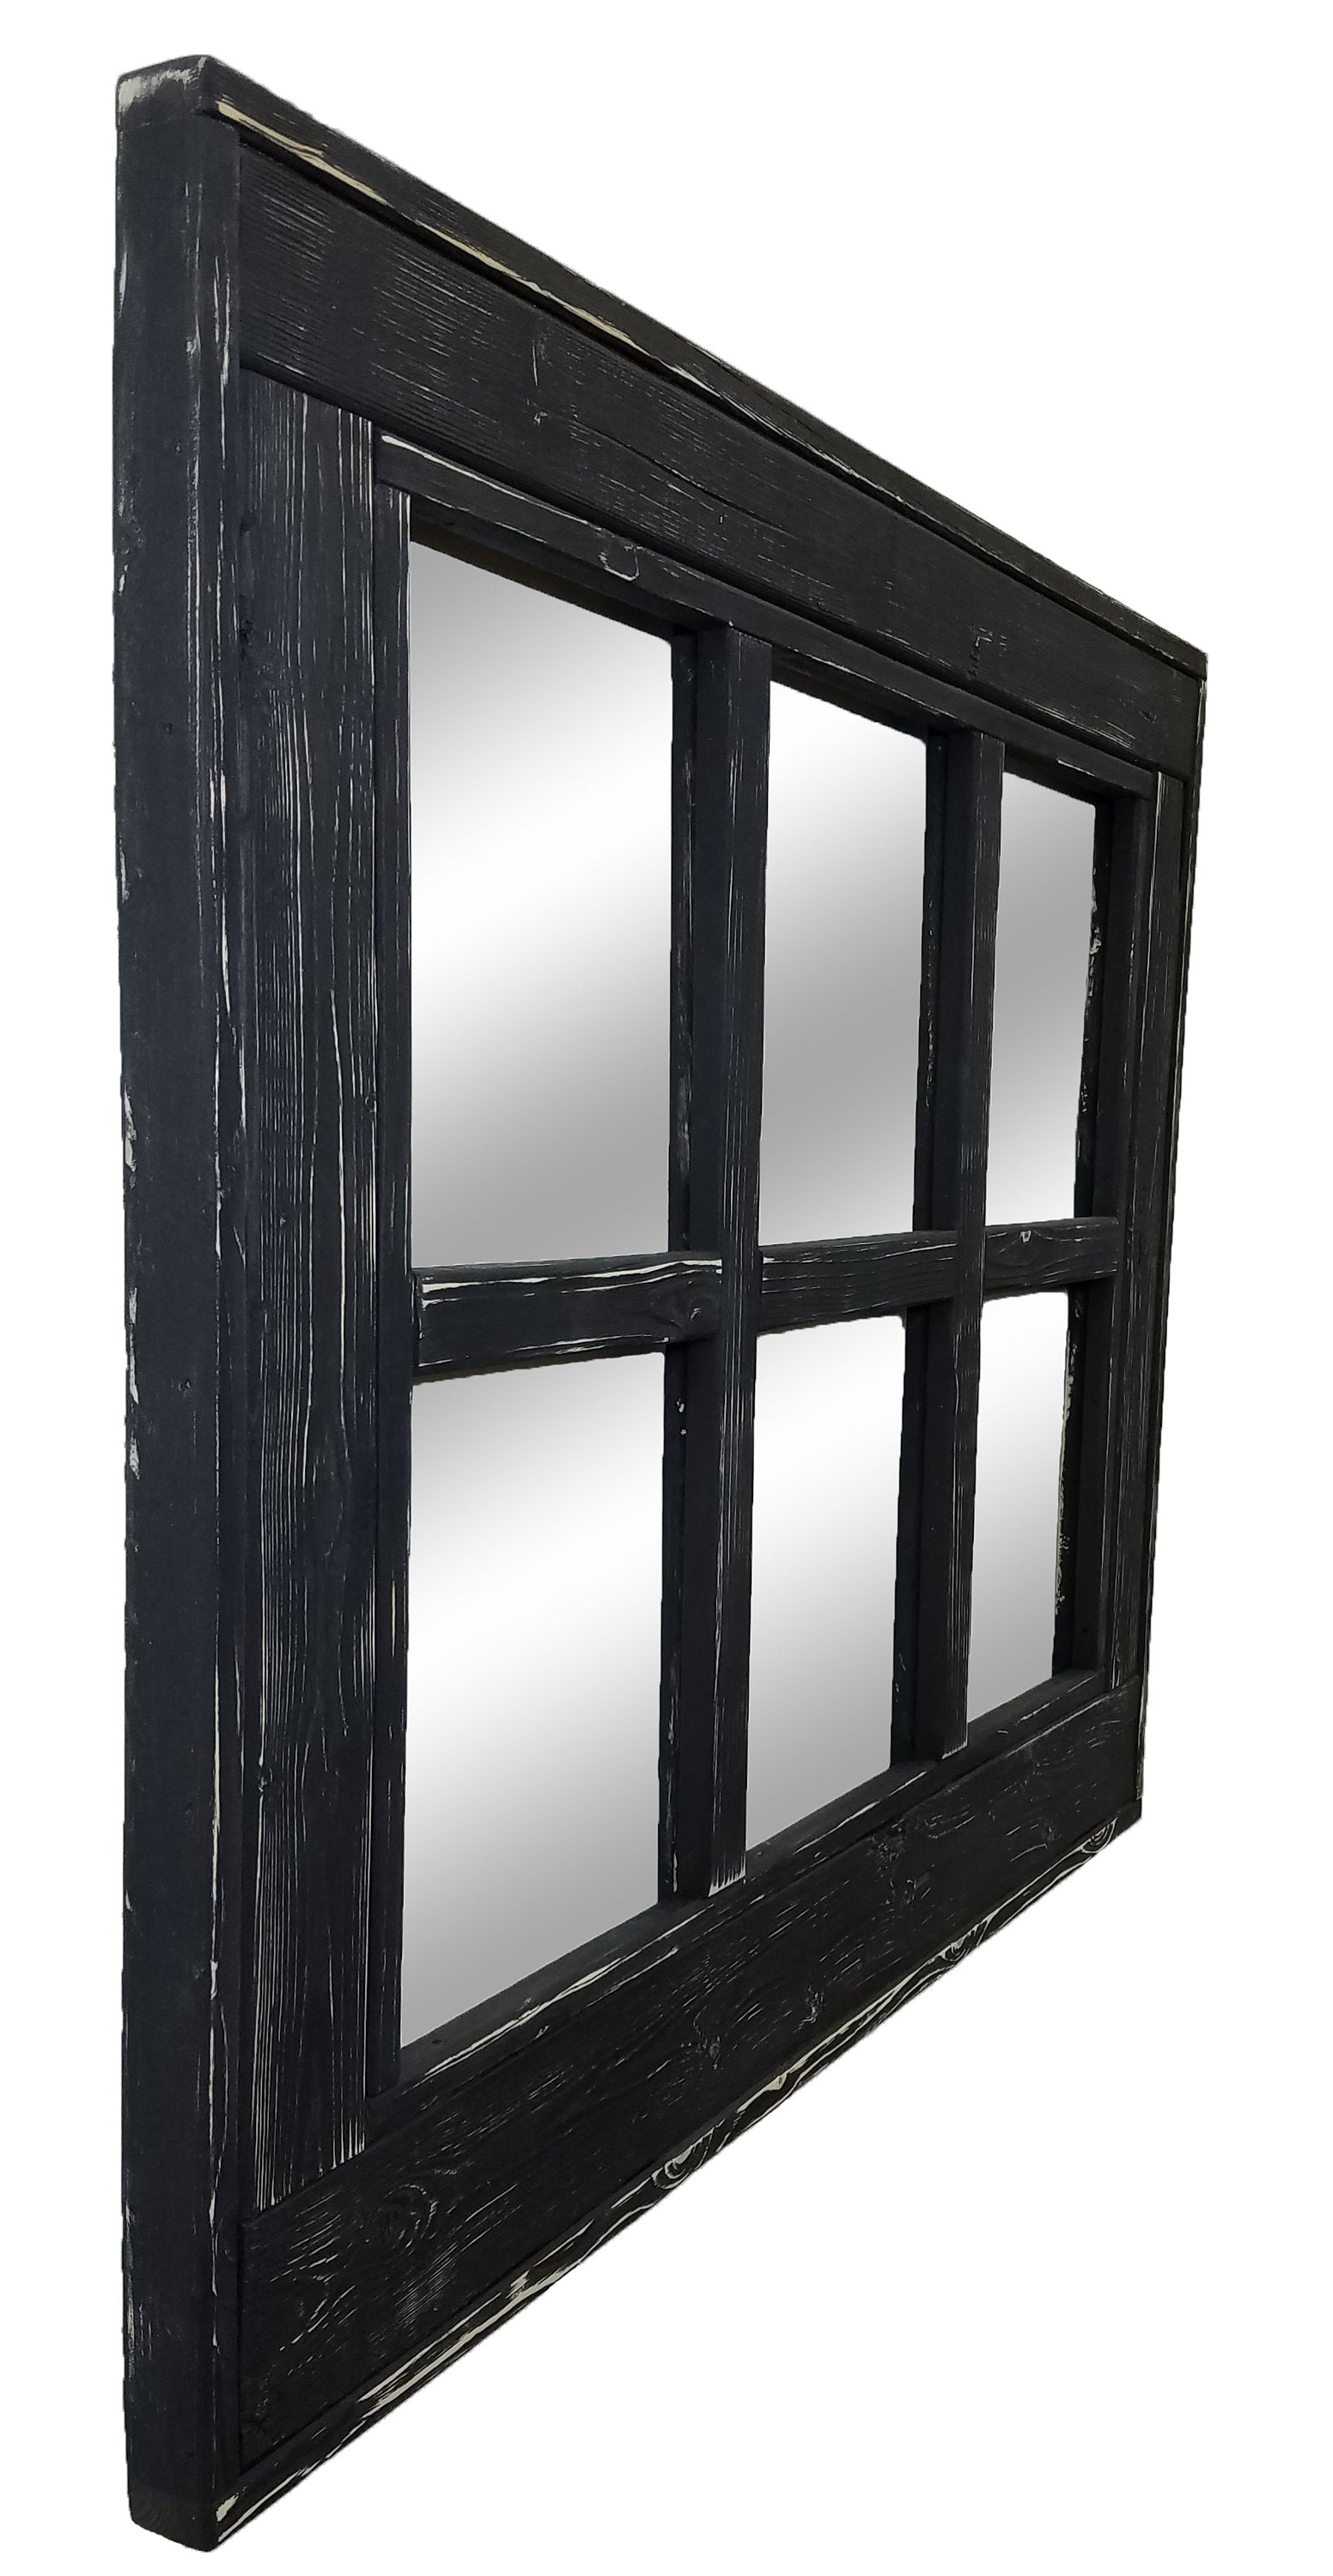 6 Pane Herringbone Rustic Wall Mirror, Shown in Kettle Black